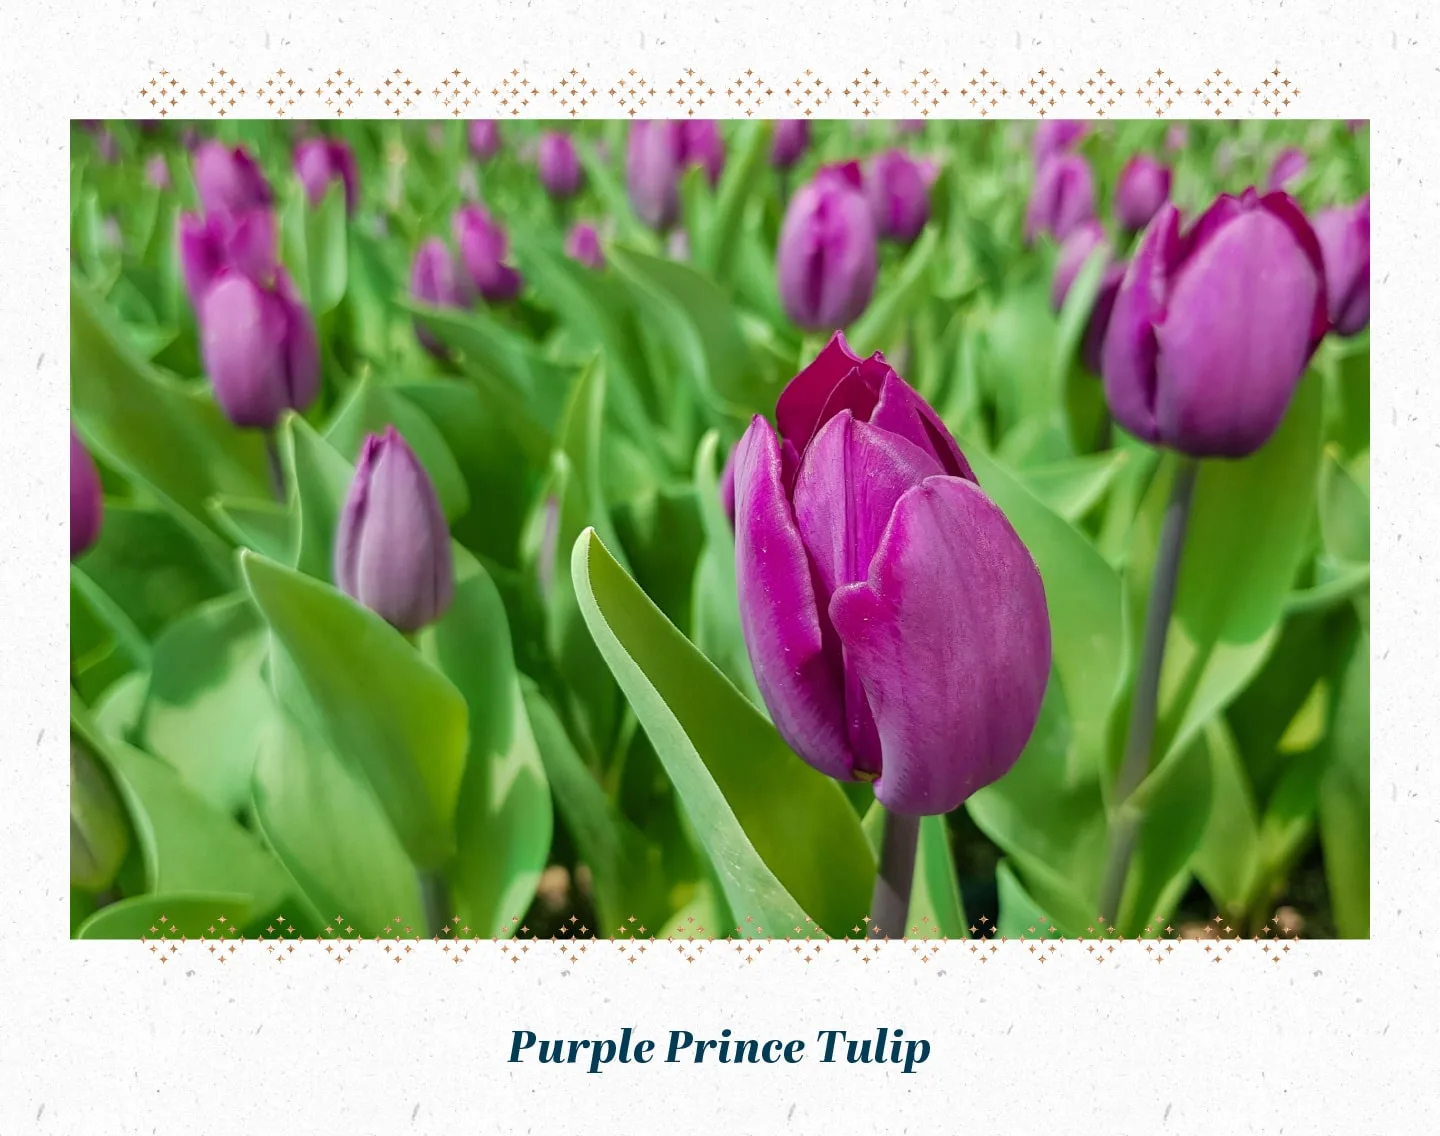 purple-prince-tulip-min